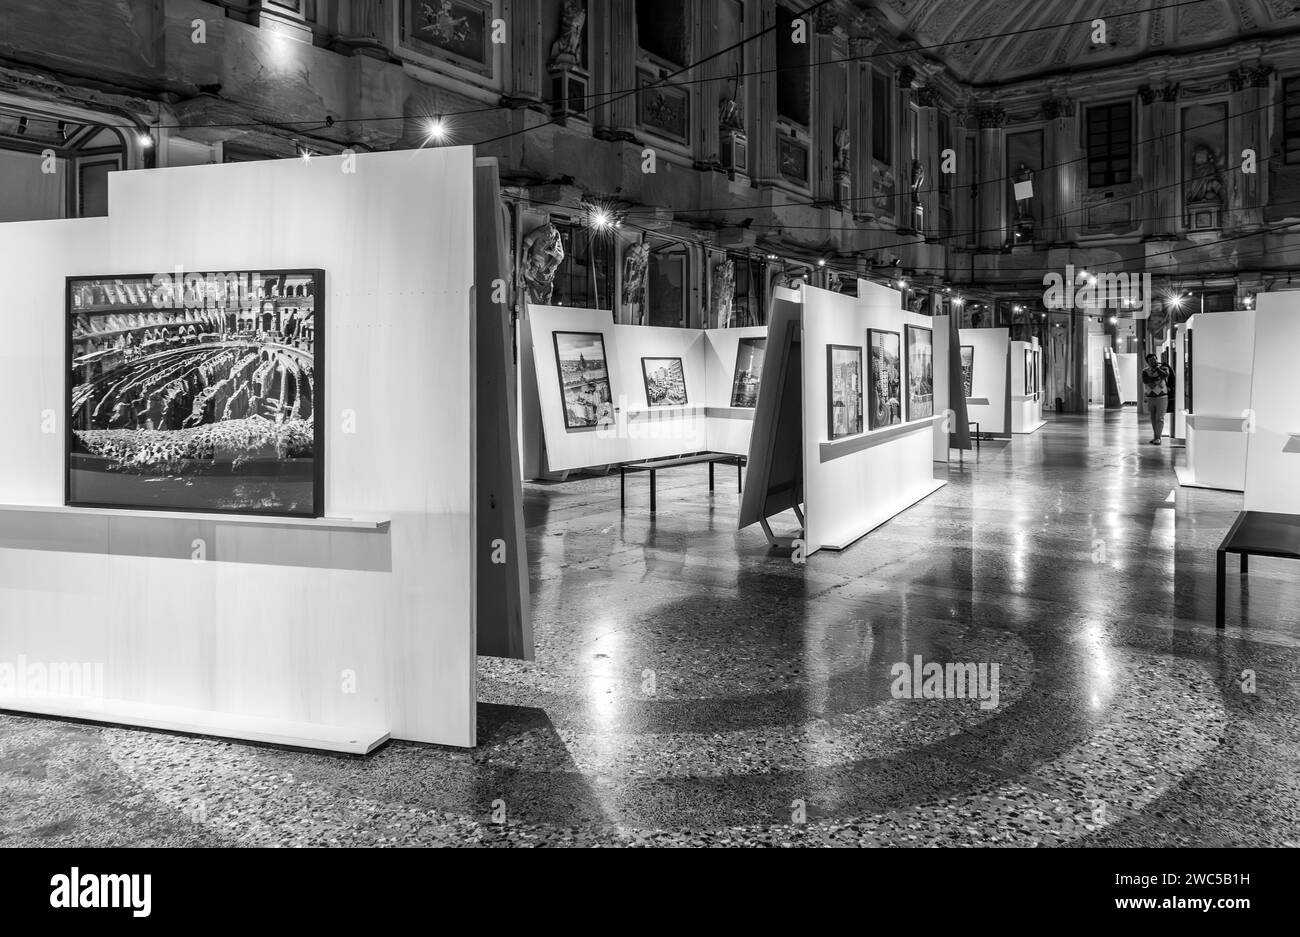 Eine Ausstellung des italienischen Fotografen Gabriele Basilico (1944 - 2013) - (urbane zeitgenössische Landschaften) - im Palazzo reale in Mailand, Italien Stockfoto